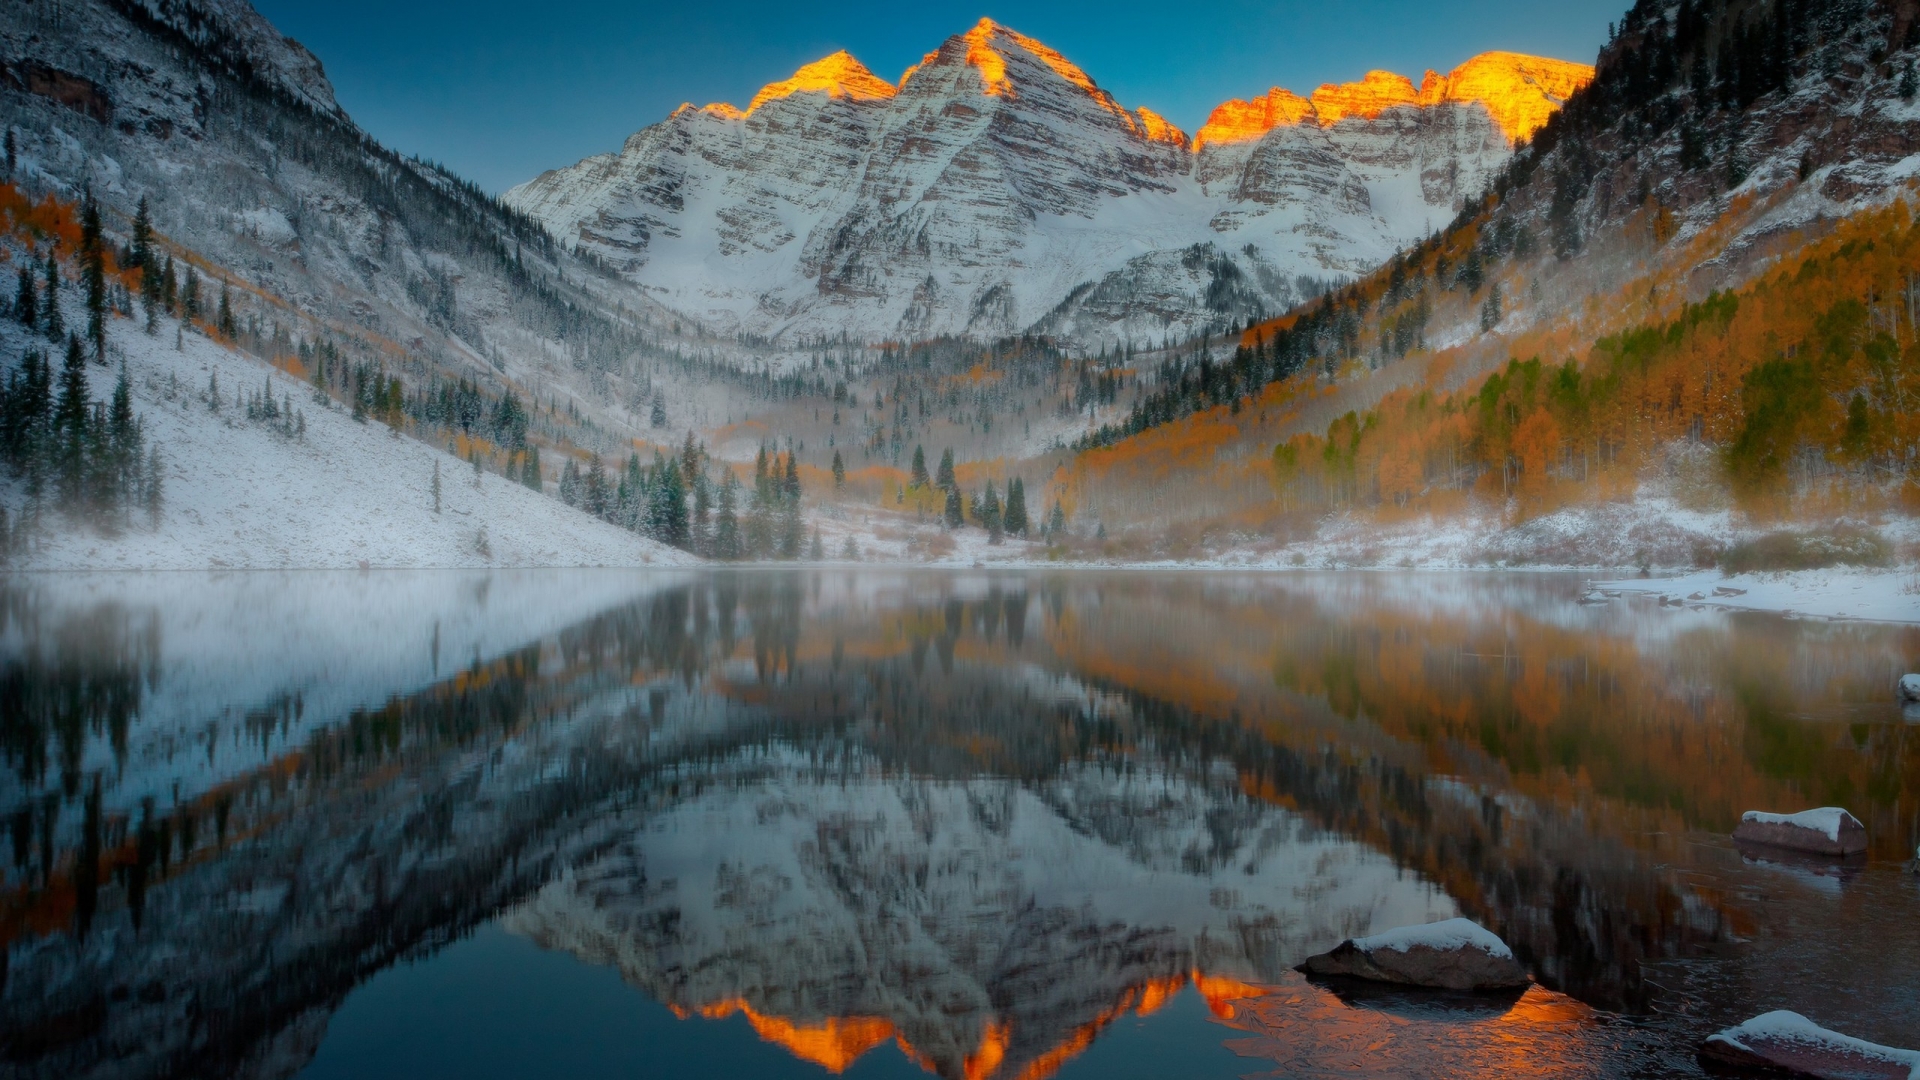 Aspen Mountain Colorado for 1920 x 1080 HDTV 1080p resolution